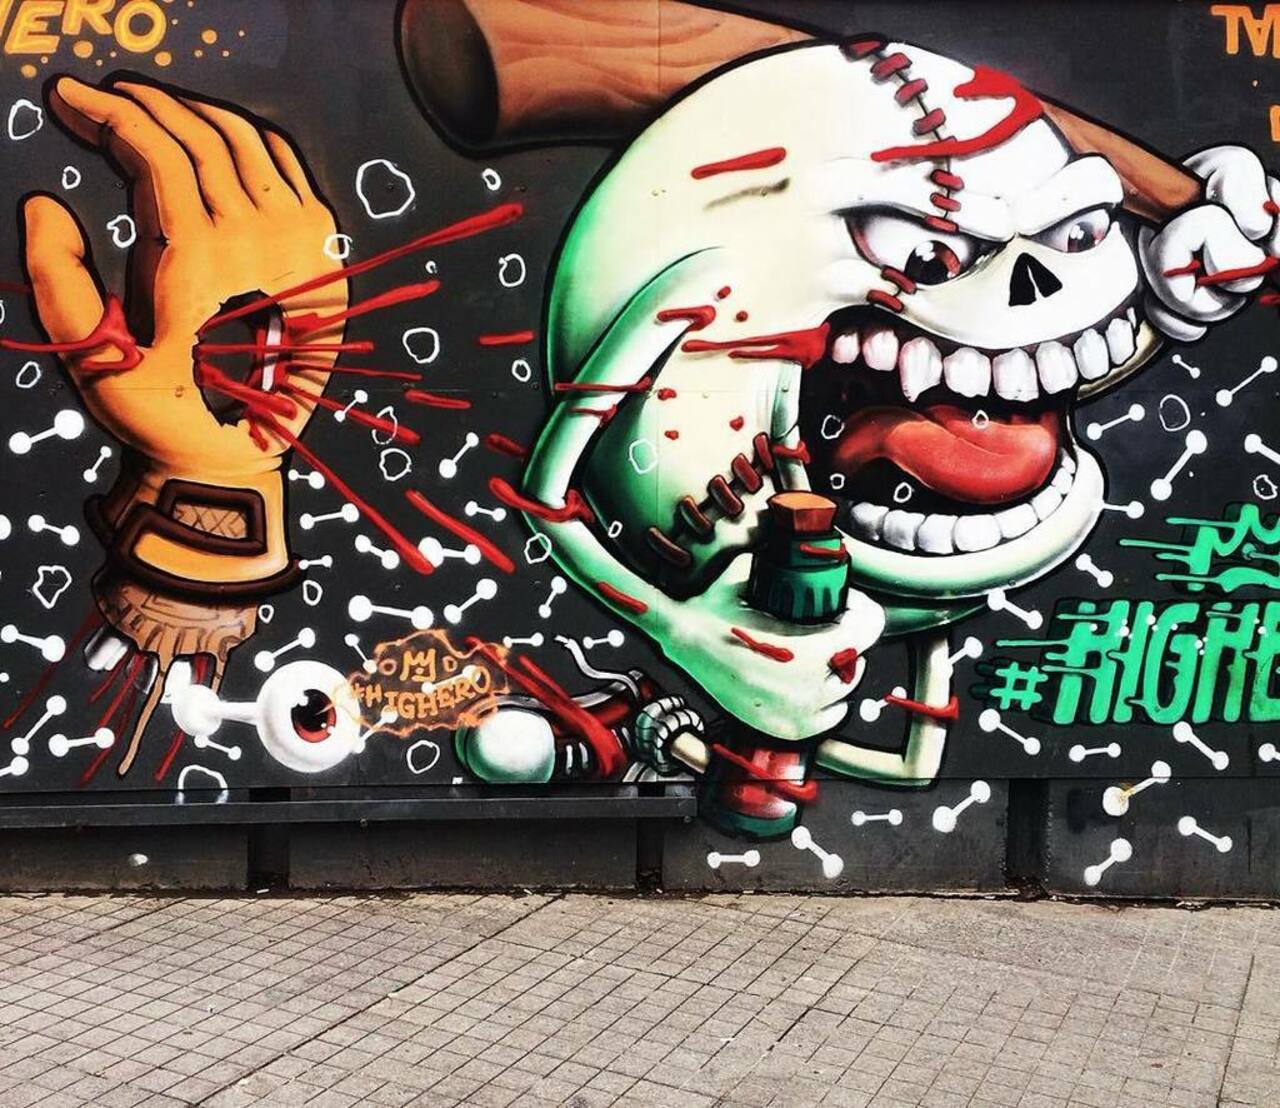 o p s ! ✳️ #streetartistanbul #graffiti #colorful #streetart #istiklal #art #vsco #vscoall #vscocam #vscodaily #vsc… https://t.co/epaBWXCA4r